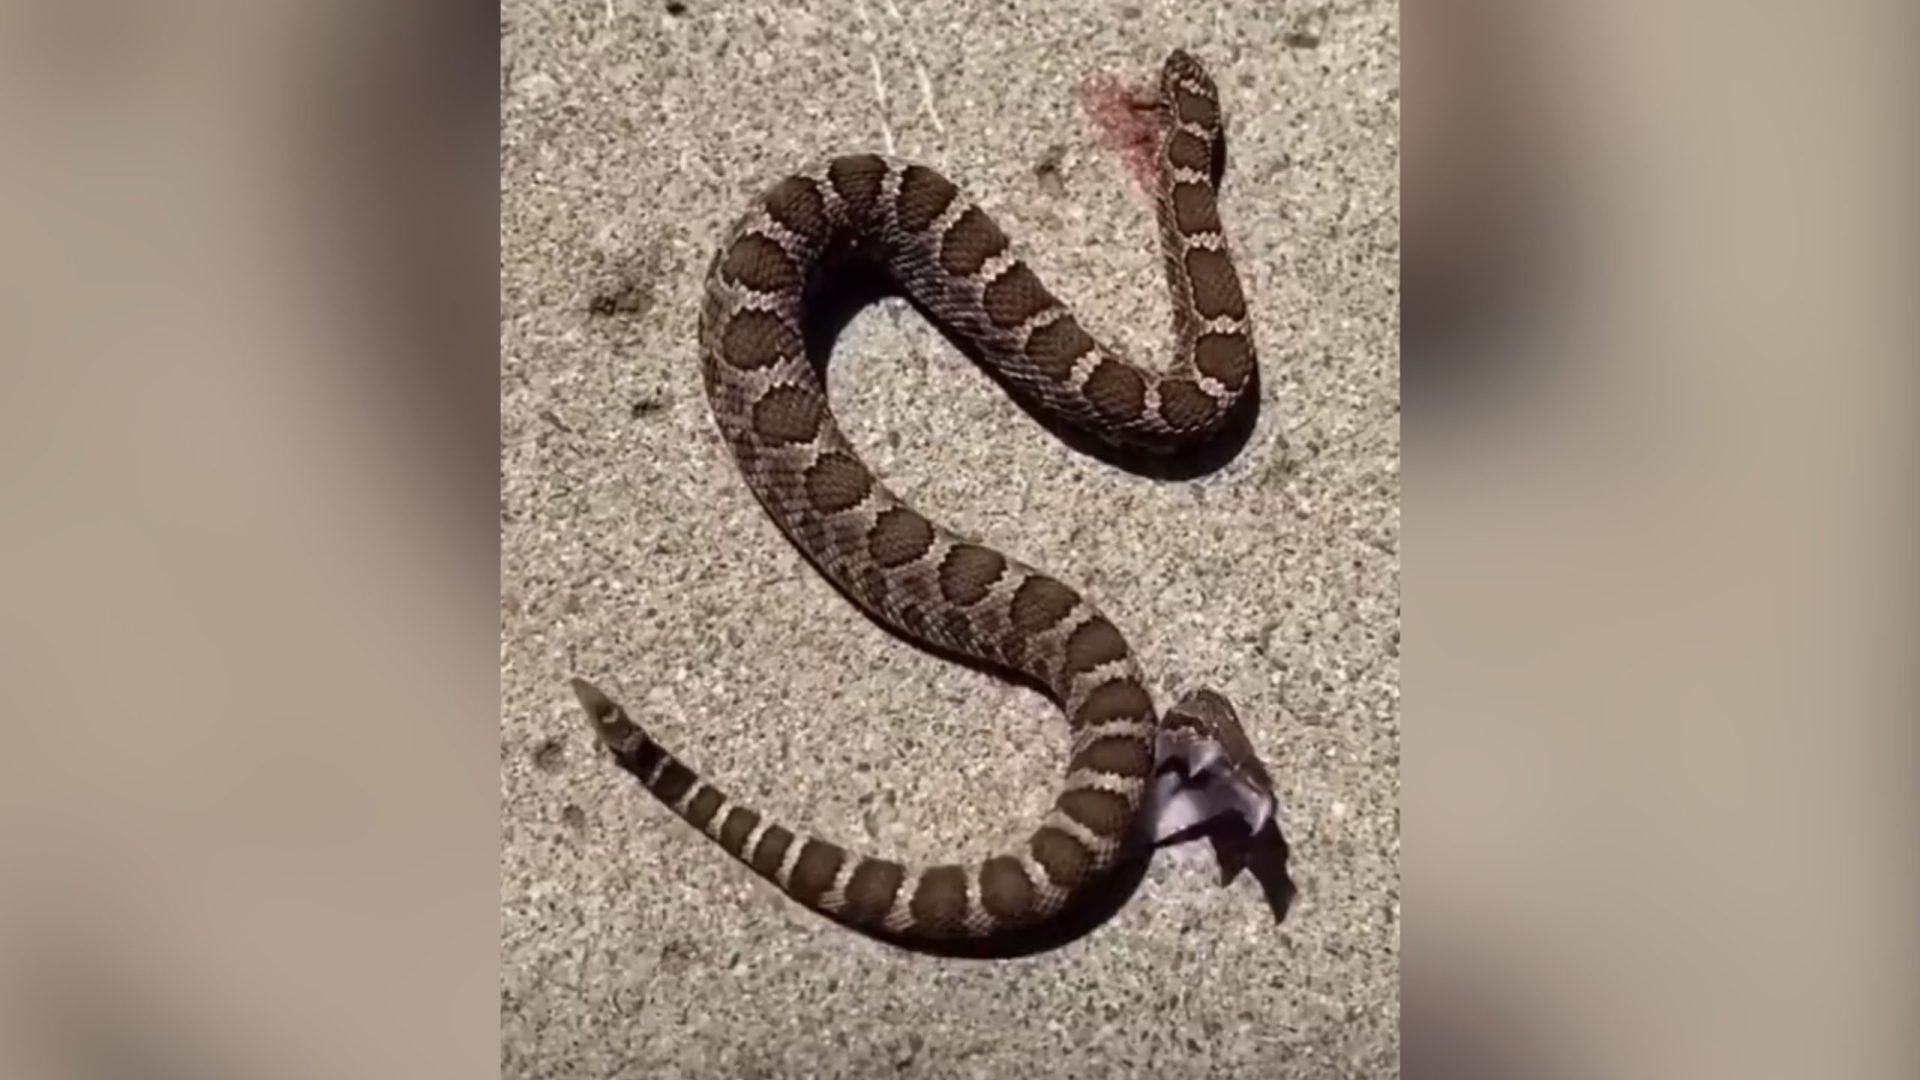 O vídeo não diz em que país a cena da cobra foi registrada. - Foto: Reprodução/TwitterOTerrifying